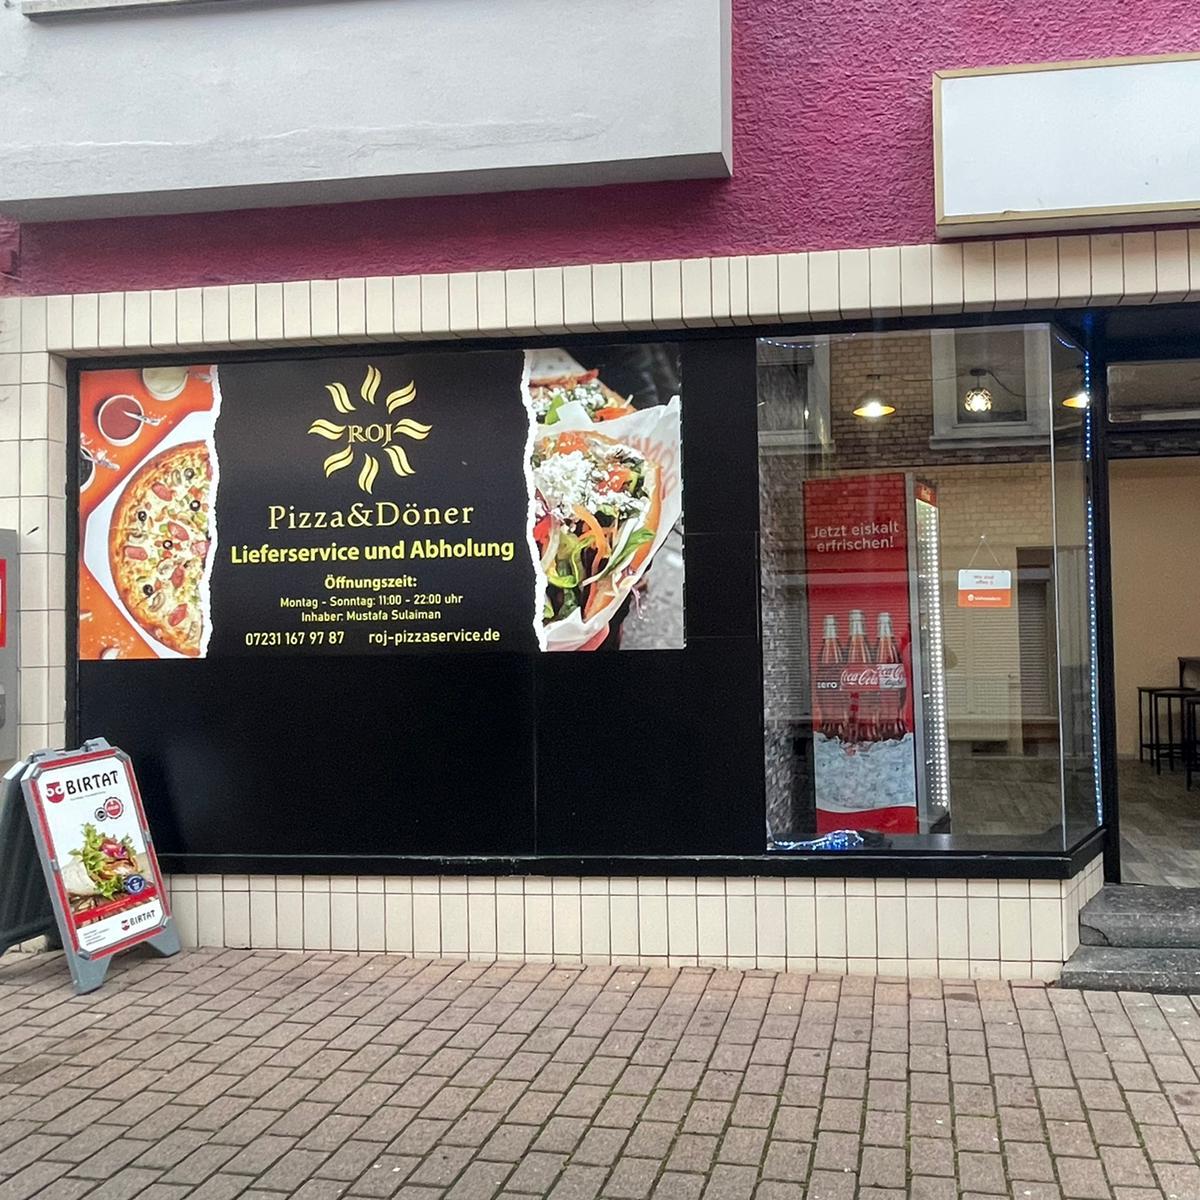 Restaurant "Pizza Heimservice ROJ" in Ispringen